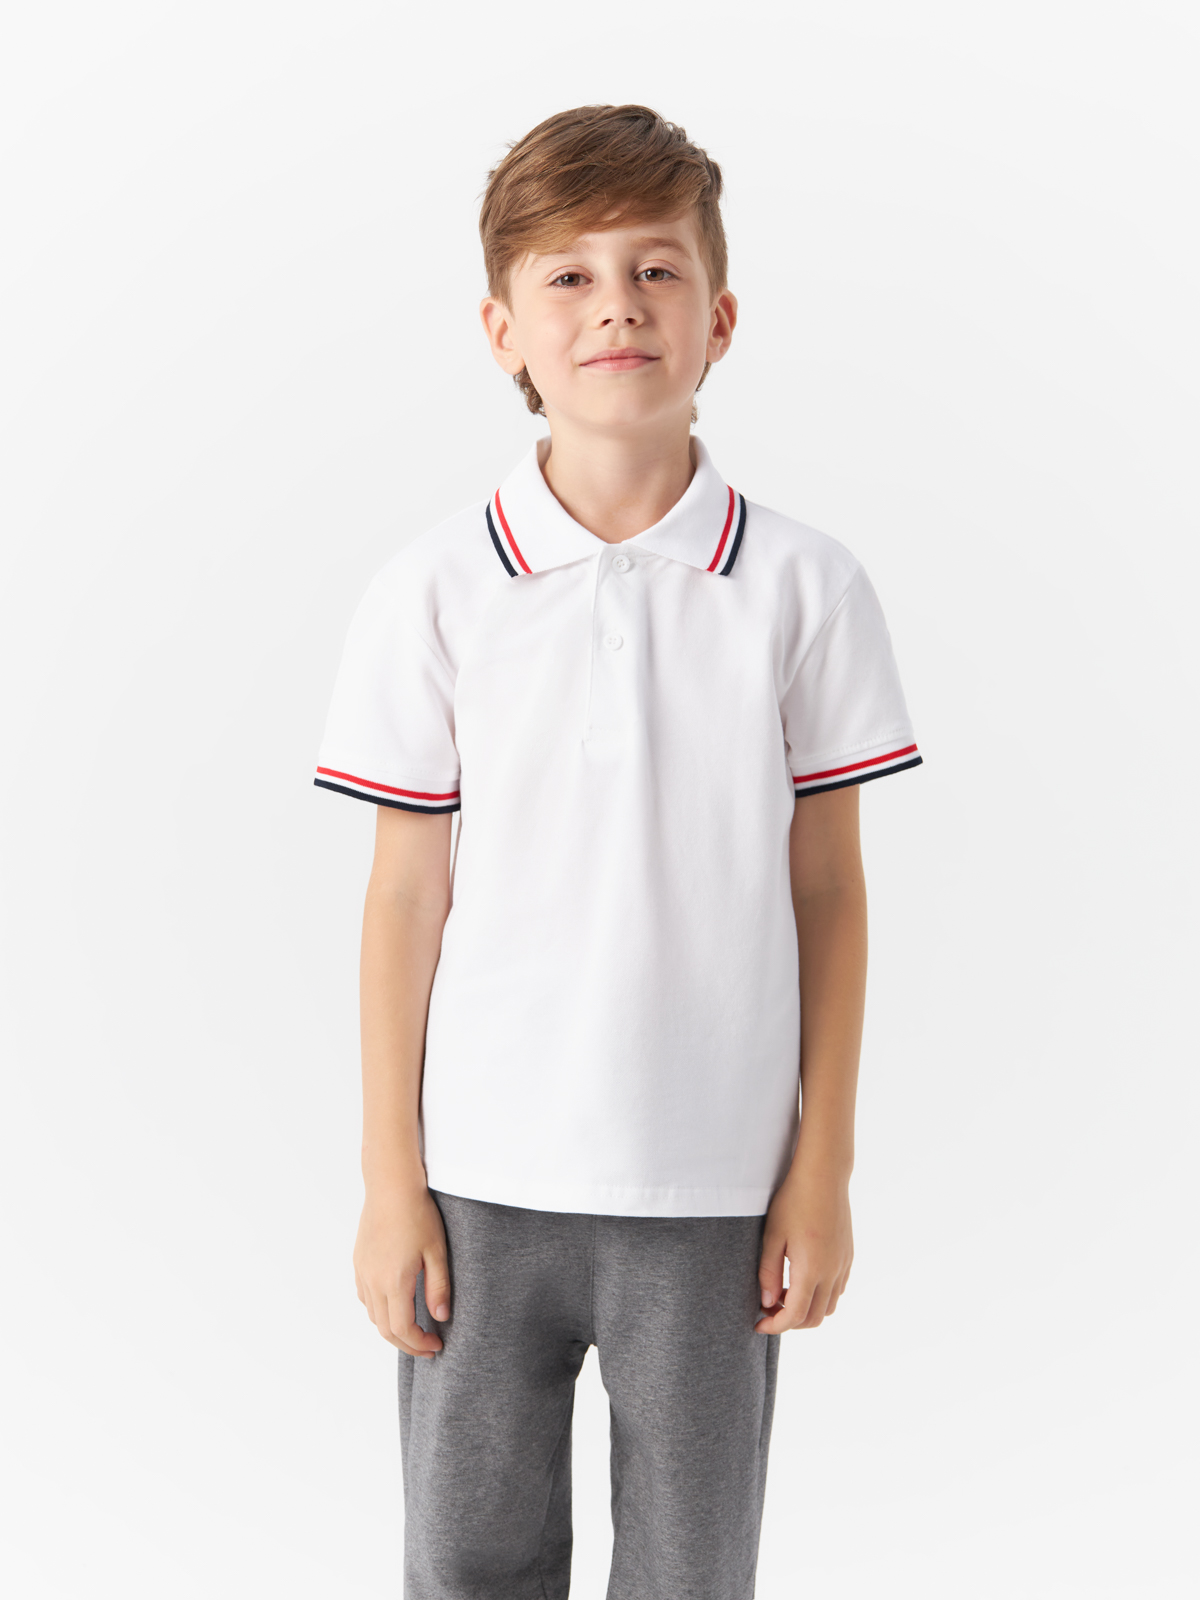 Рубашка-поло Yiwu Xflot Supply Chain детская, с коротким рукавом, BS-11, размер 150 см